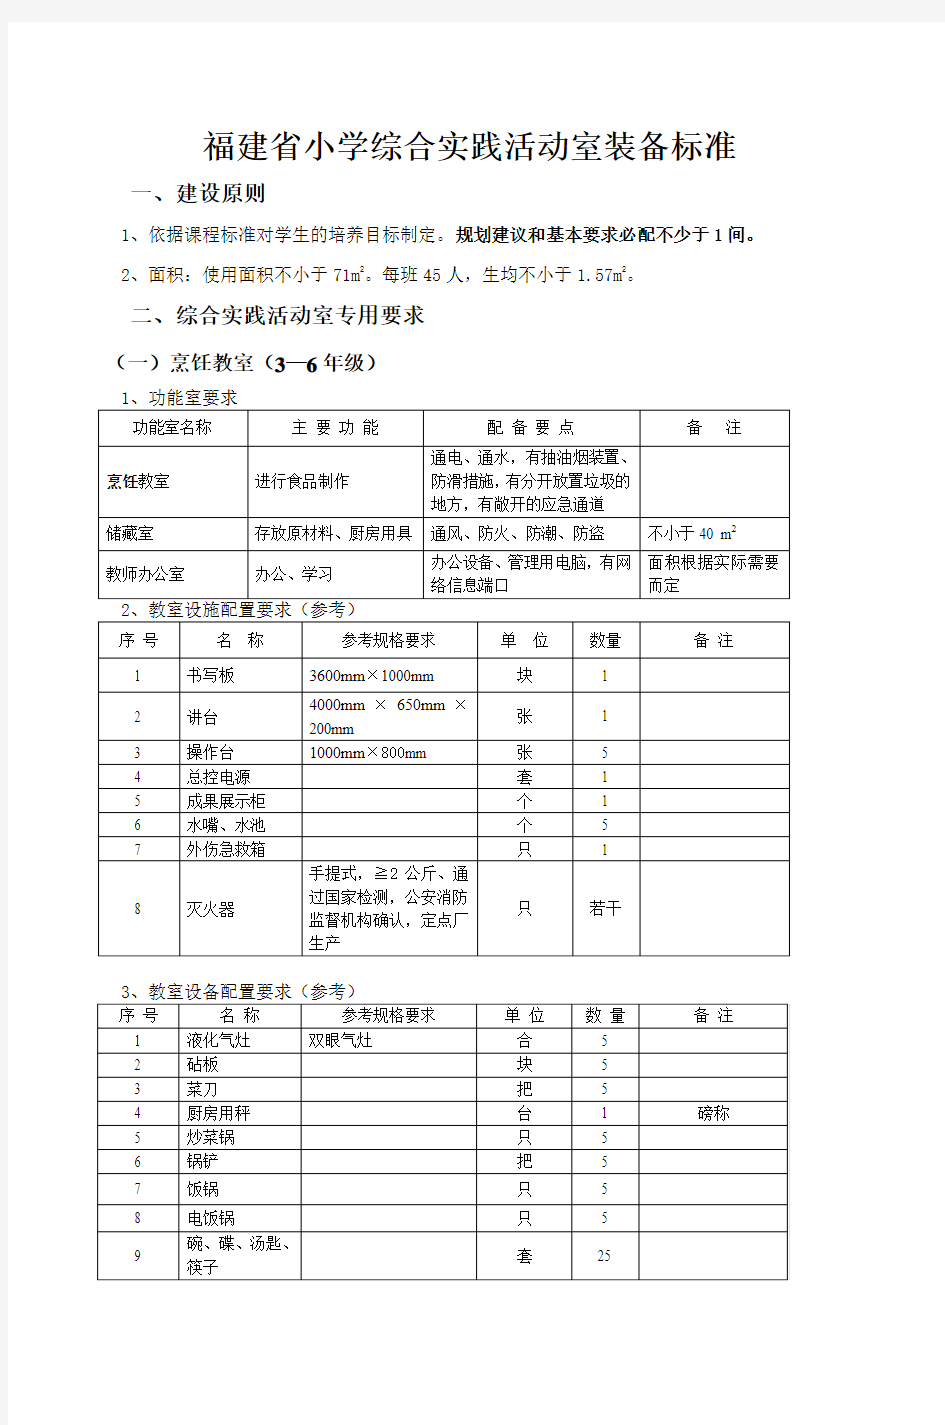 福建省小学综合实践活动室装备标准